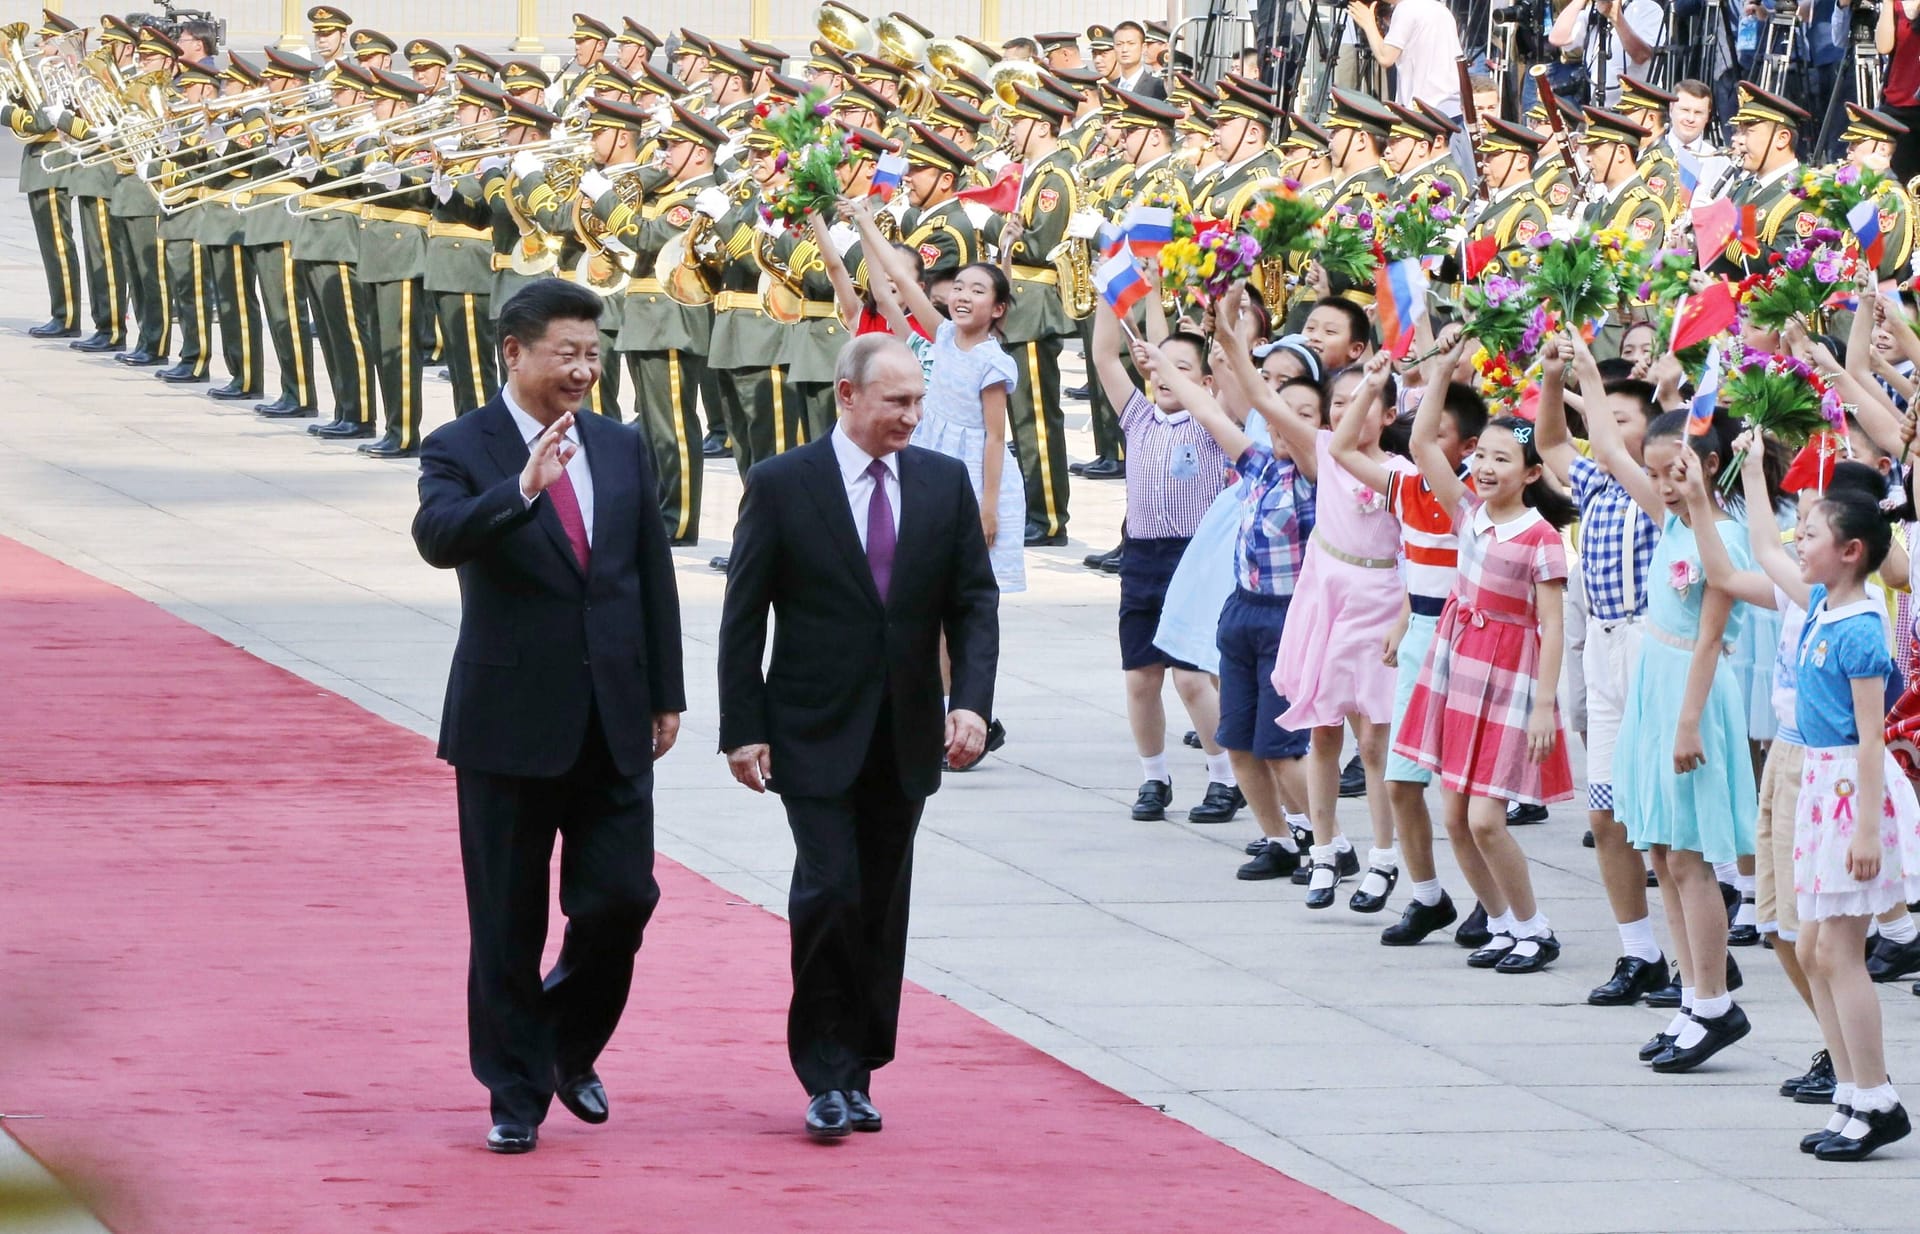 Öffentlich groß inszenierte Auftritte der beiden gab es genüge. Hier wird Putin in Shanghai von Xi mit einer Begrüßungszeremonie empfangen.